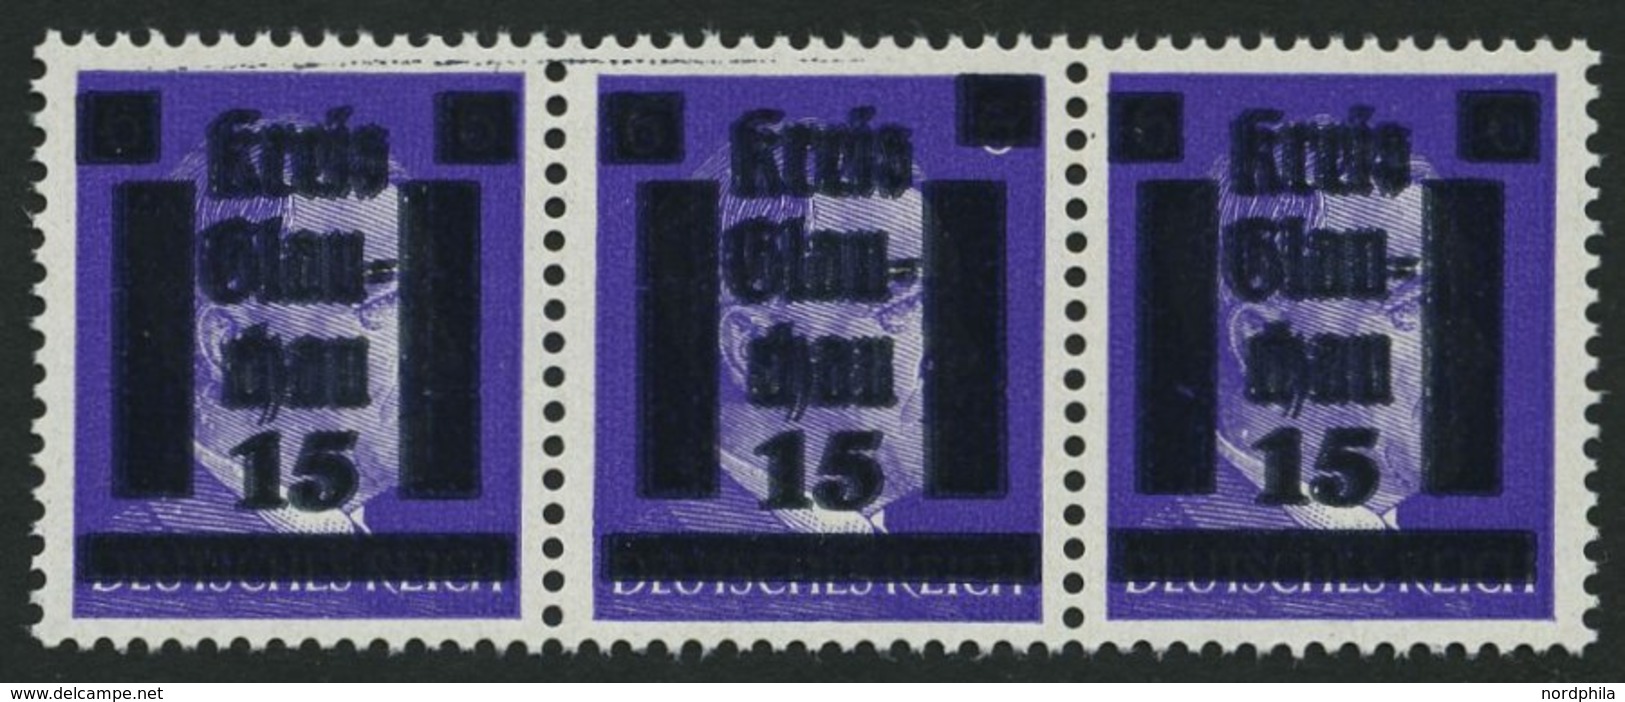 GLAUCHAU 5aDDI **, 1945, 15 Auf 6 Pf. Lebhaftblauviolett Doppelaufdruck Im Waagerechten Dreierstreifen, Ein Wert Mit Aba - Private & Local Mails